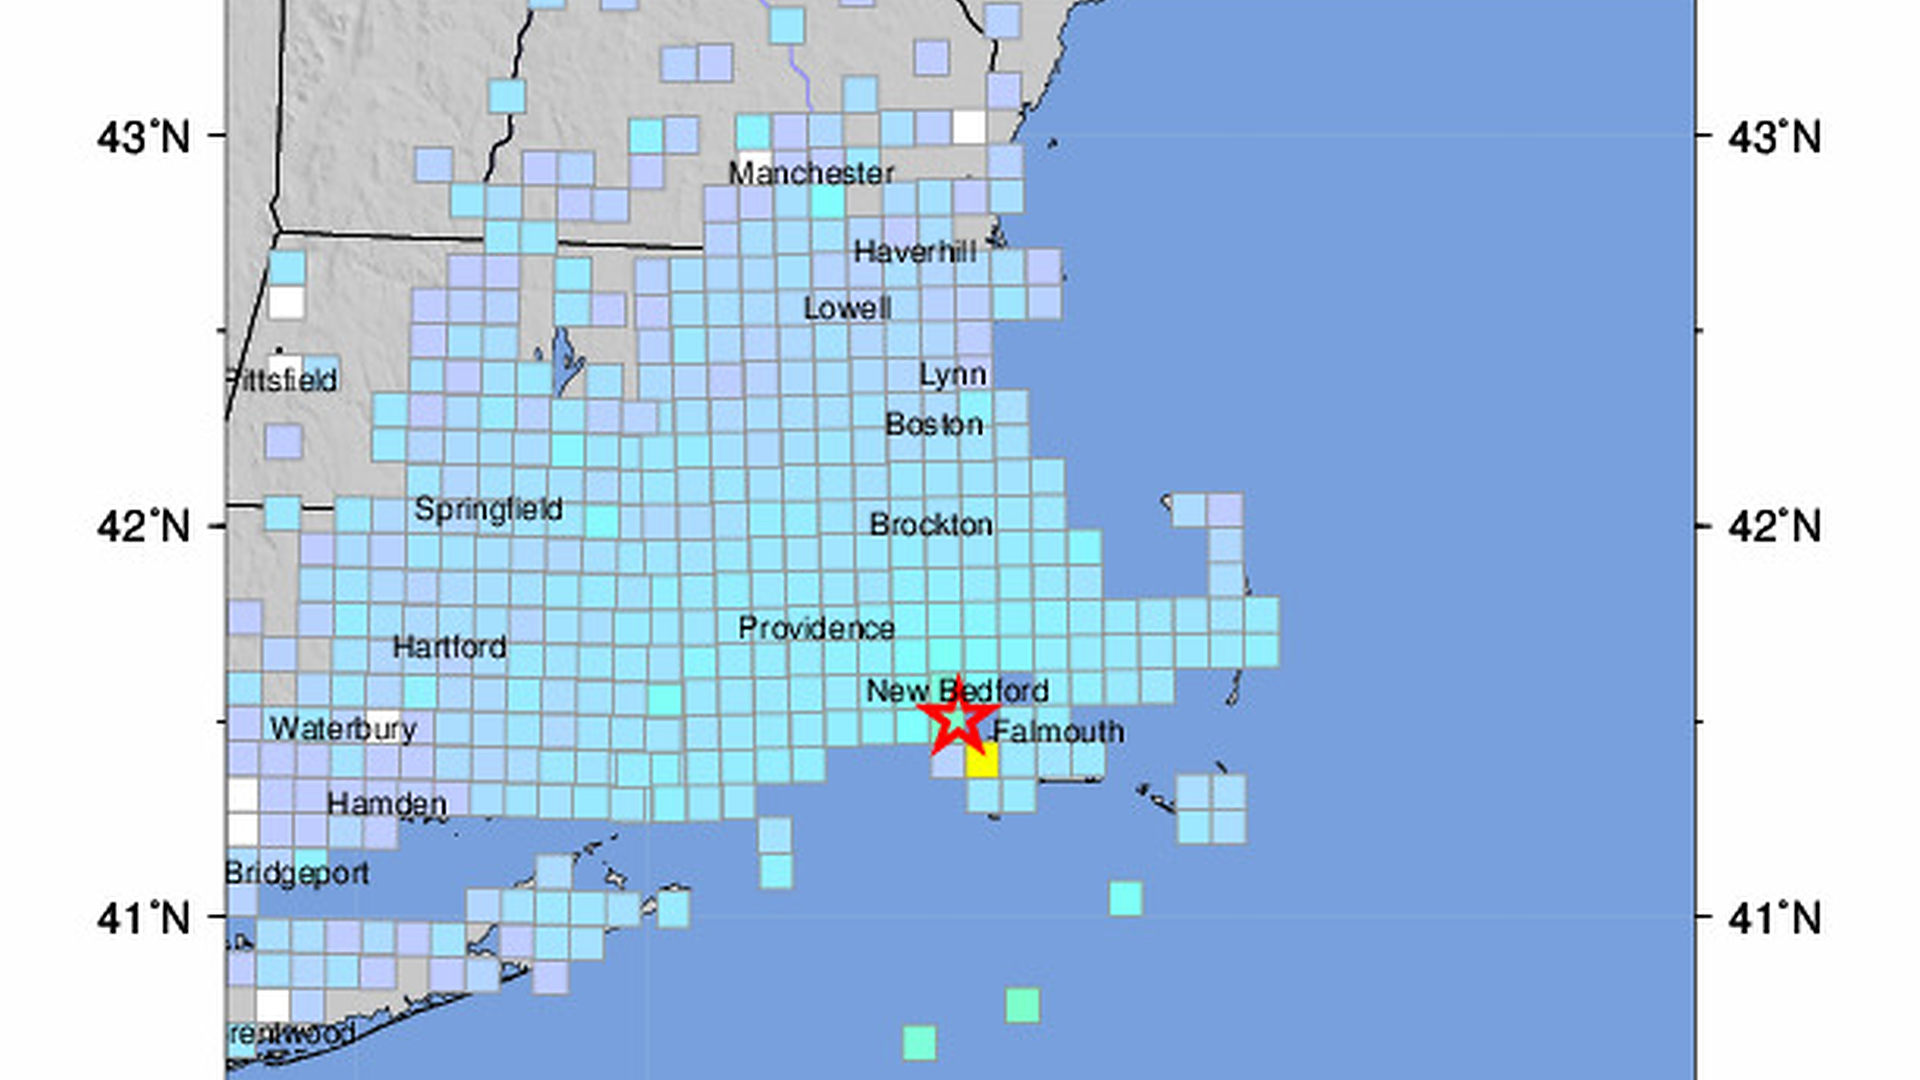 USGS Magnitude 3.6 earthquake recorded off Massachusetts coast